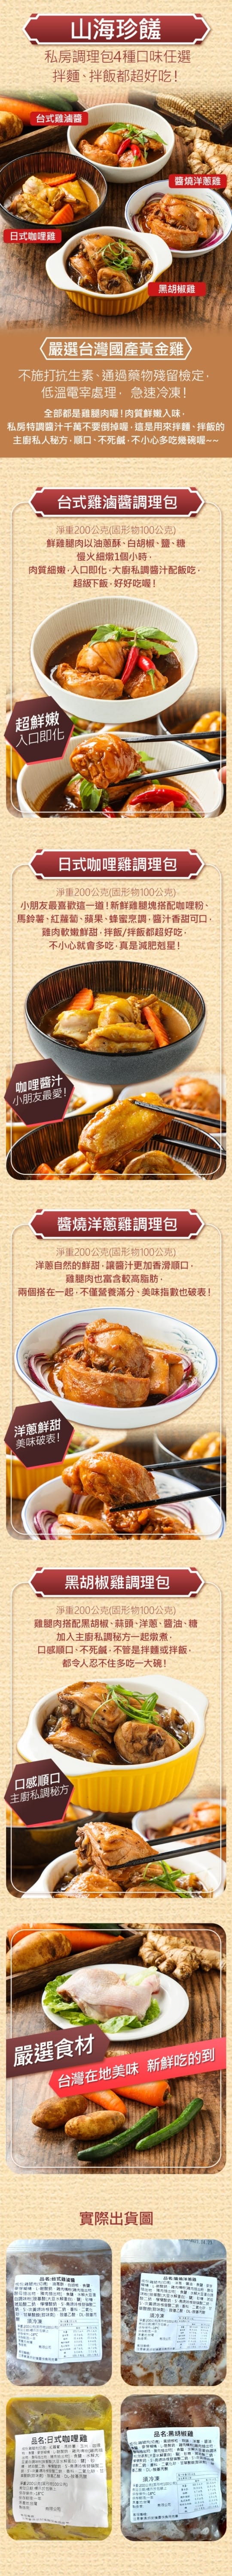 【山海珍饈】鮮嫩雞腿肉調理包4種口味(25包)